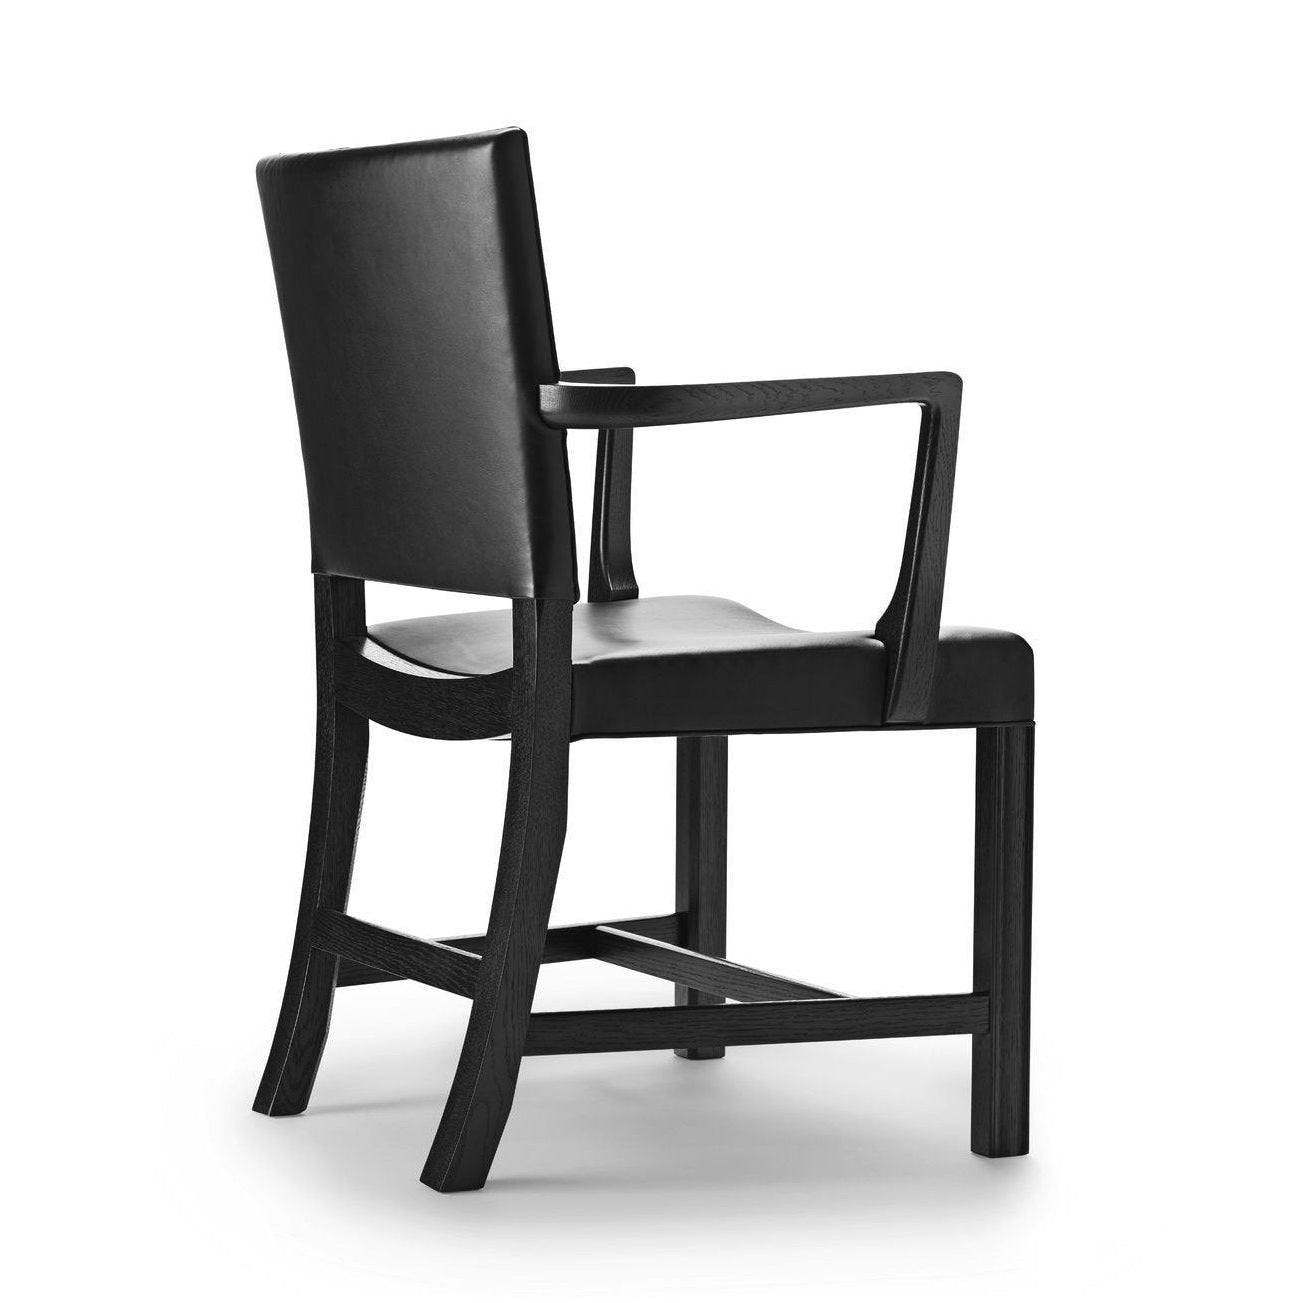 Carl Hansen KK37581 großer roter Sessel, schwarzer Eiche/schwarzes Leder